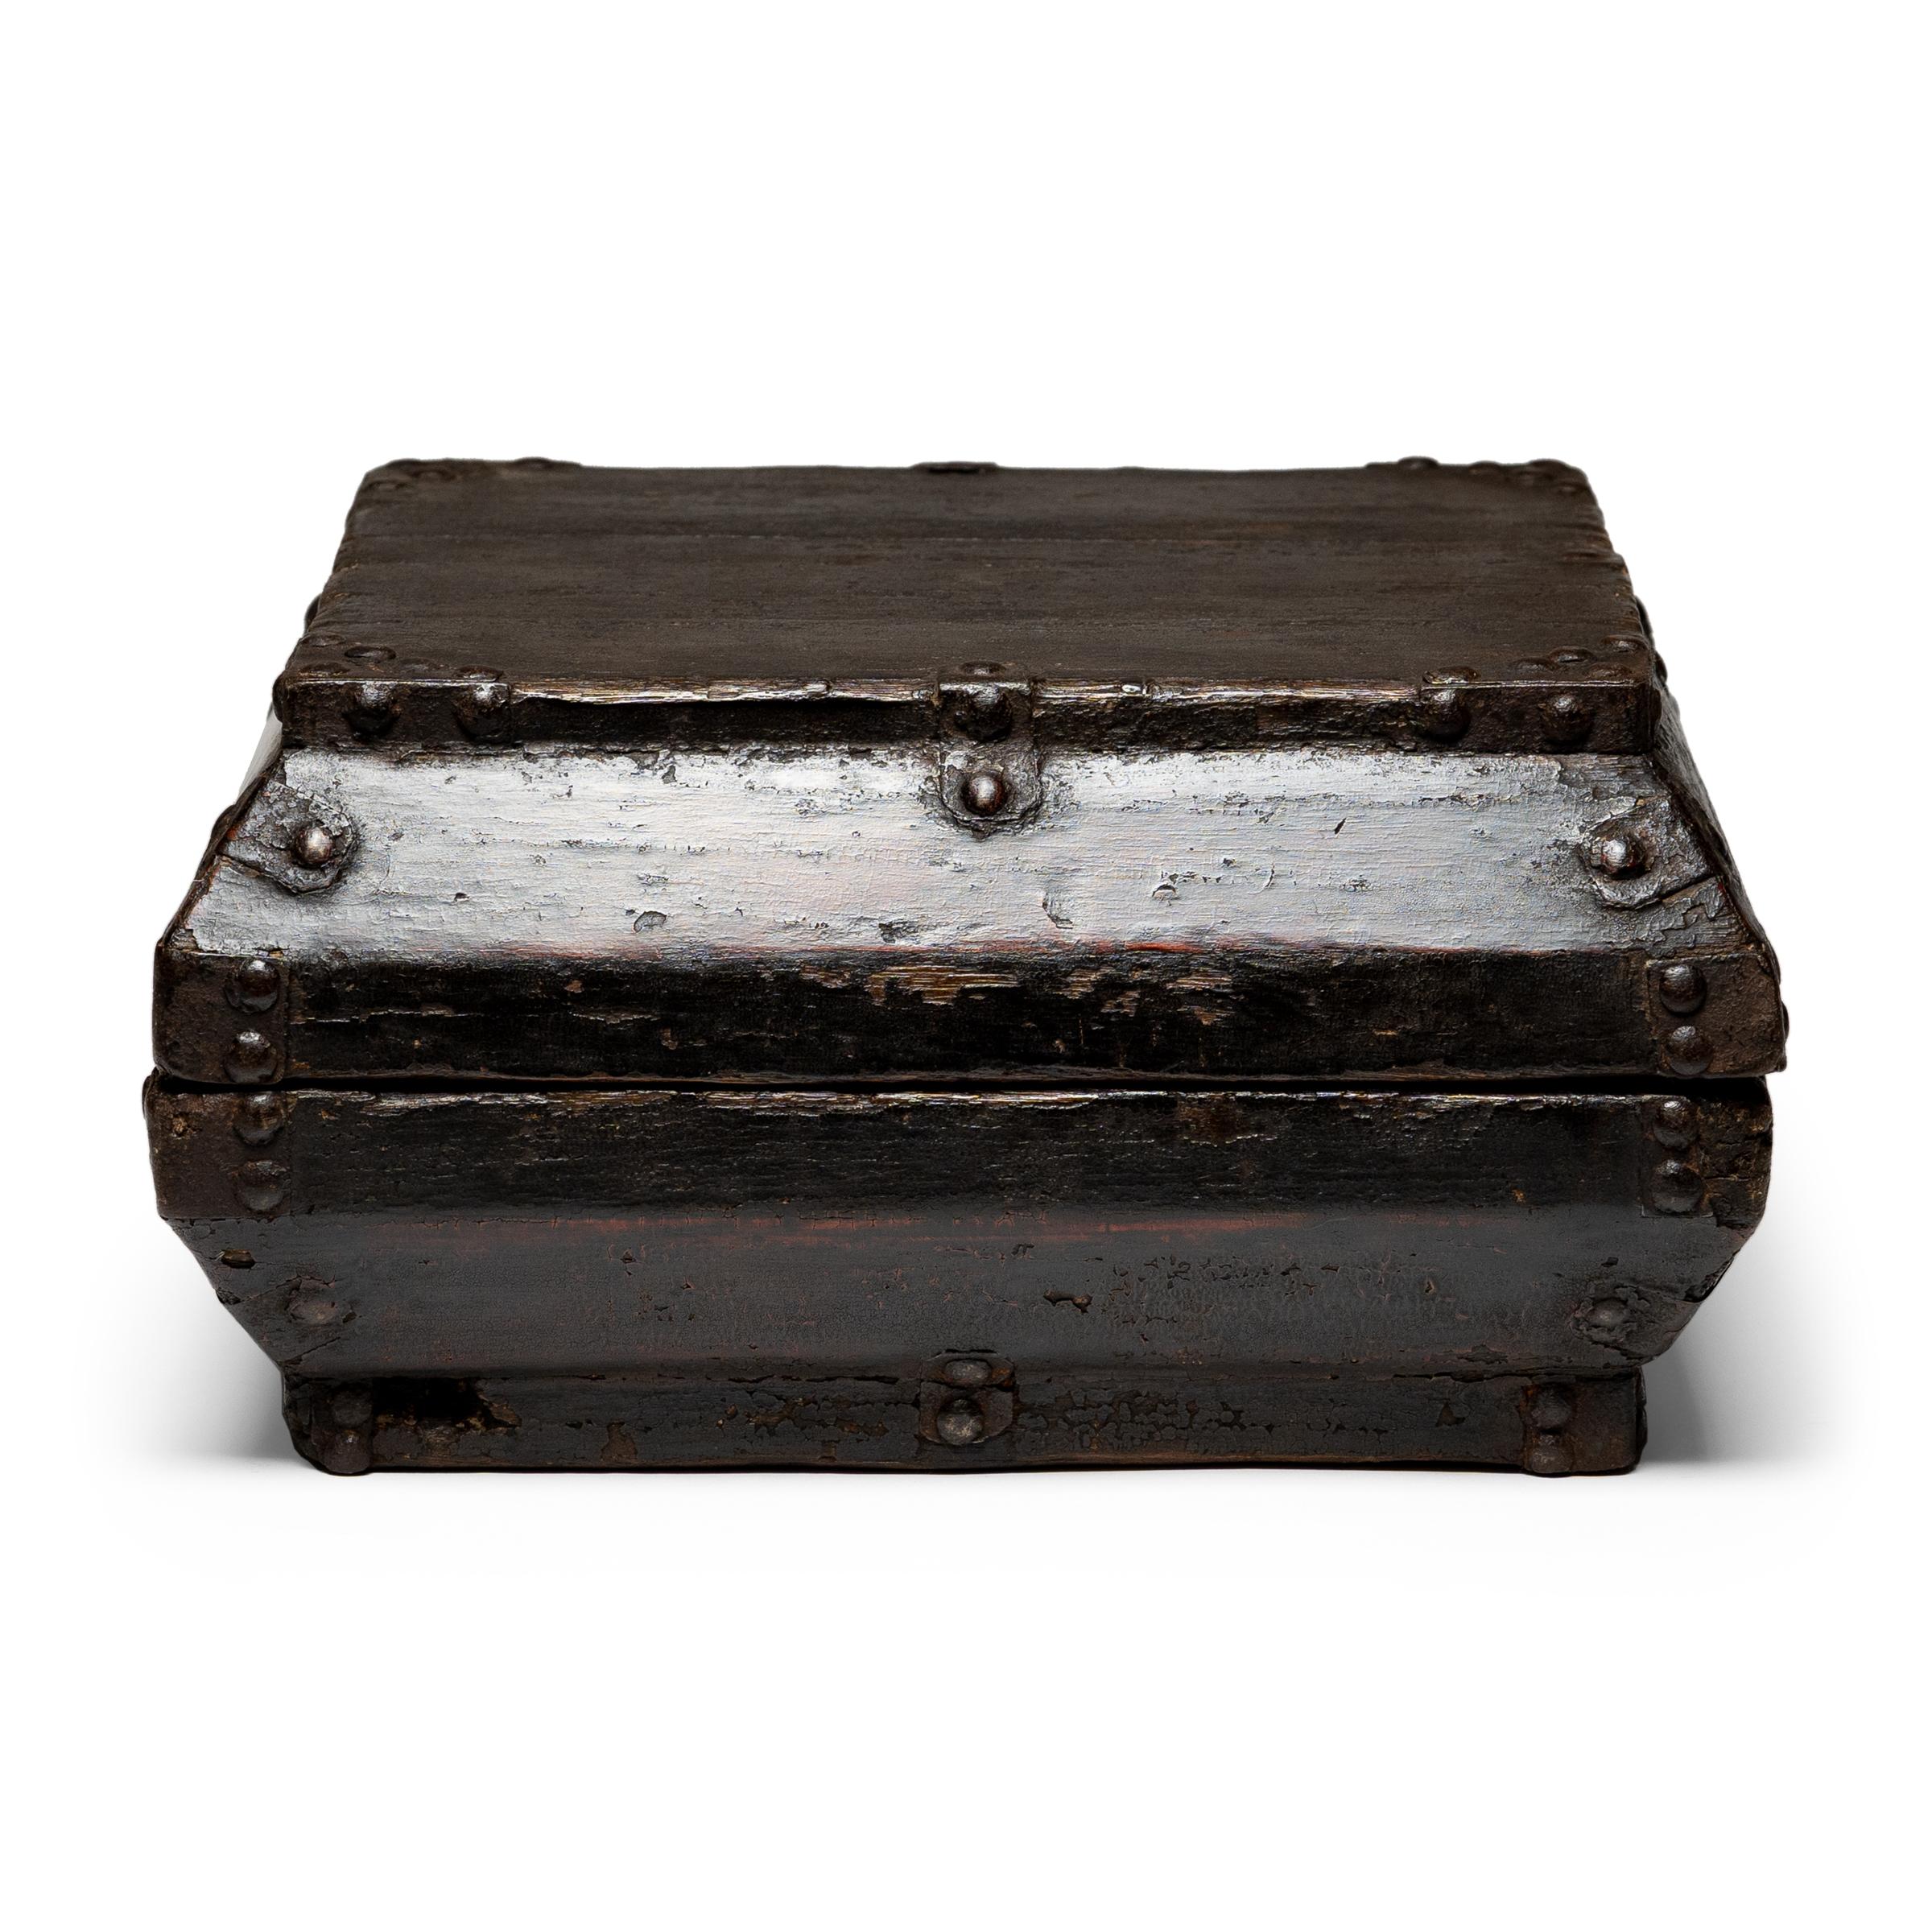 Dieser schlichte, lackierte Behälter wurde im 19. Jahrhundert als Snackbox verwendet und zu Feiertagen und besonderen Anlässen verschenkt. Zur Freude der Empfänger kam beim Öffnen der unscheinbaren Schachtel eine Fülle beliebter Snacks zum